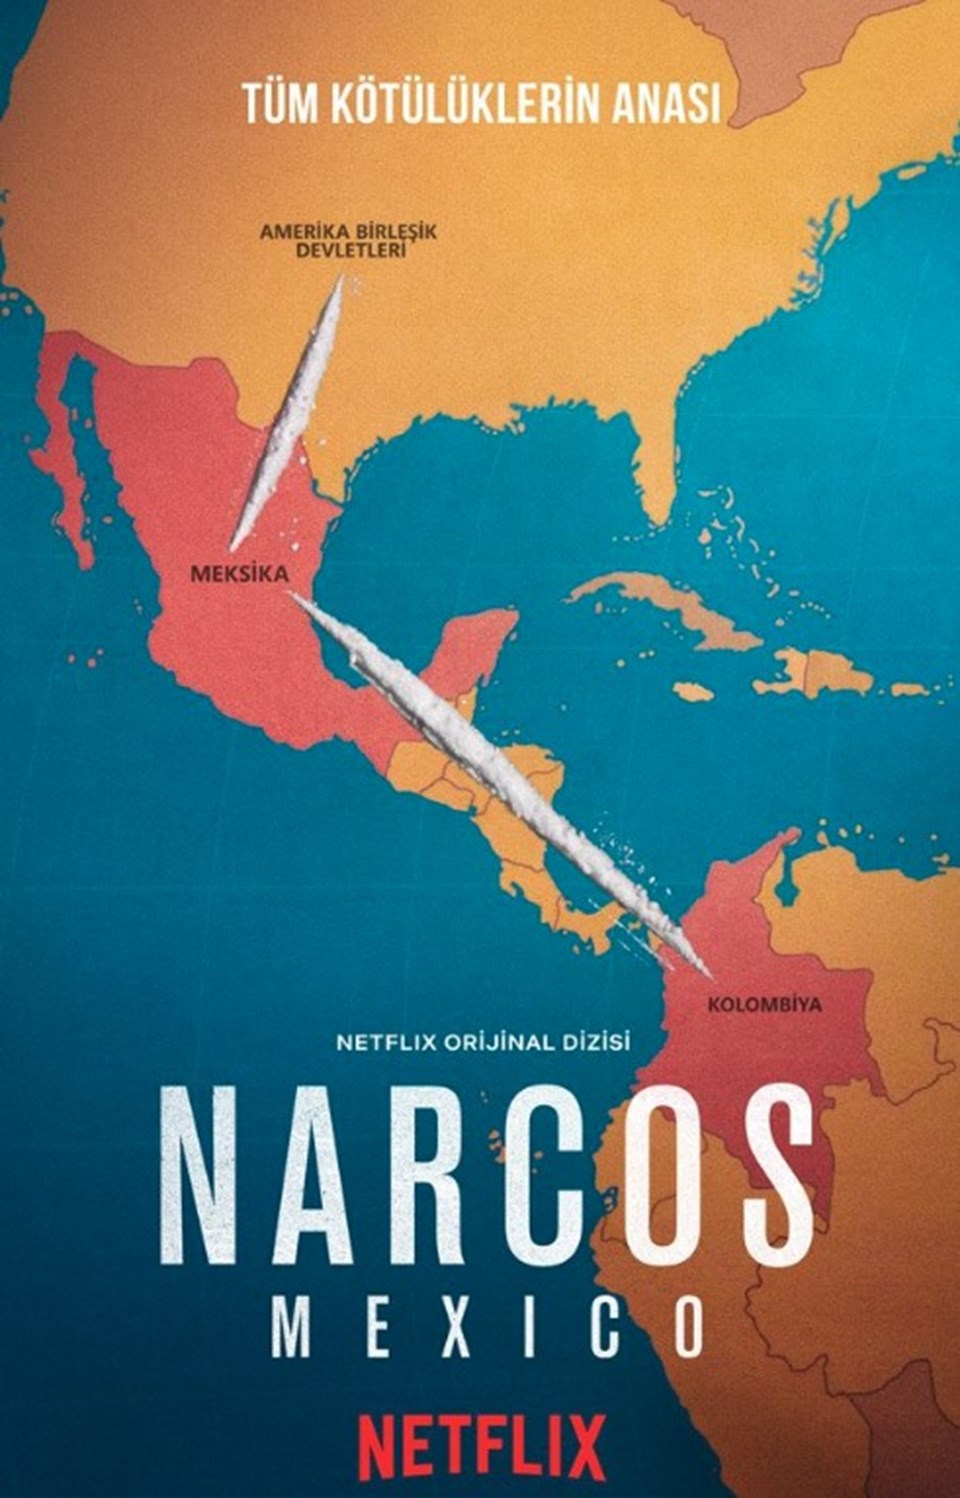 Narcos yeni sezondan ilk görüntüler ve afiş - 2